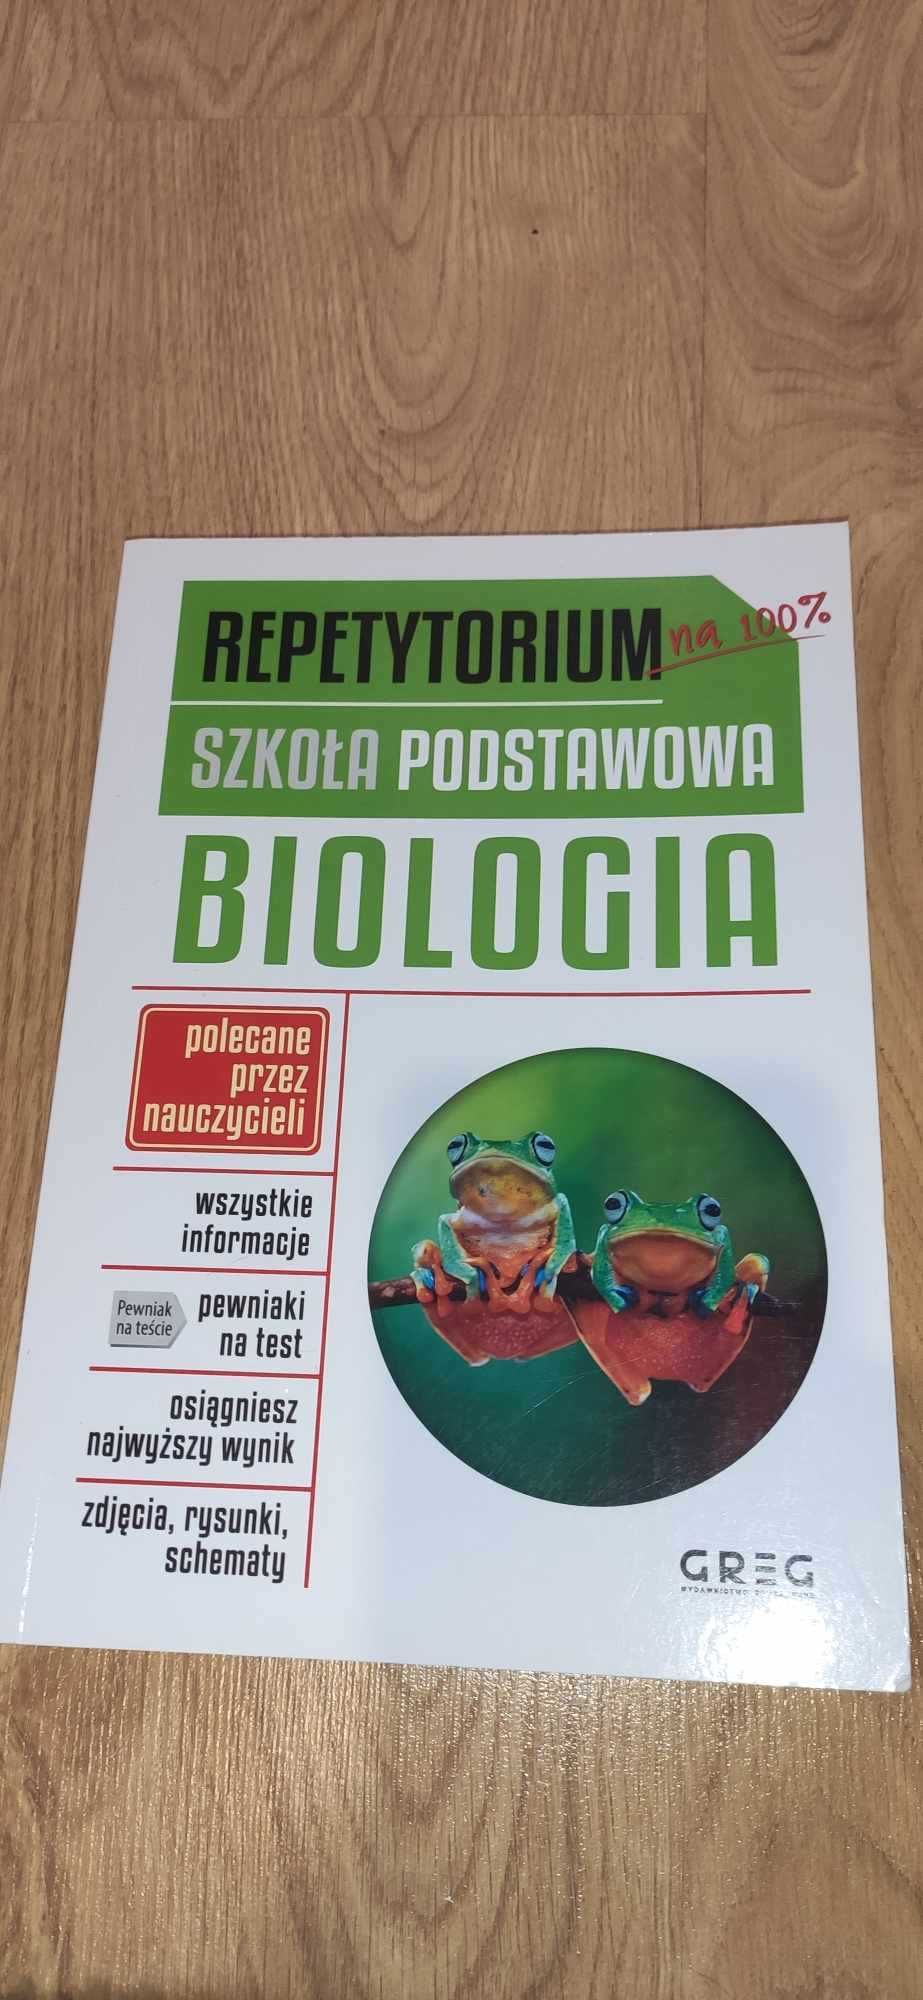 Repetytorium Biologia Szkoła Podstawowa 2019